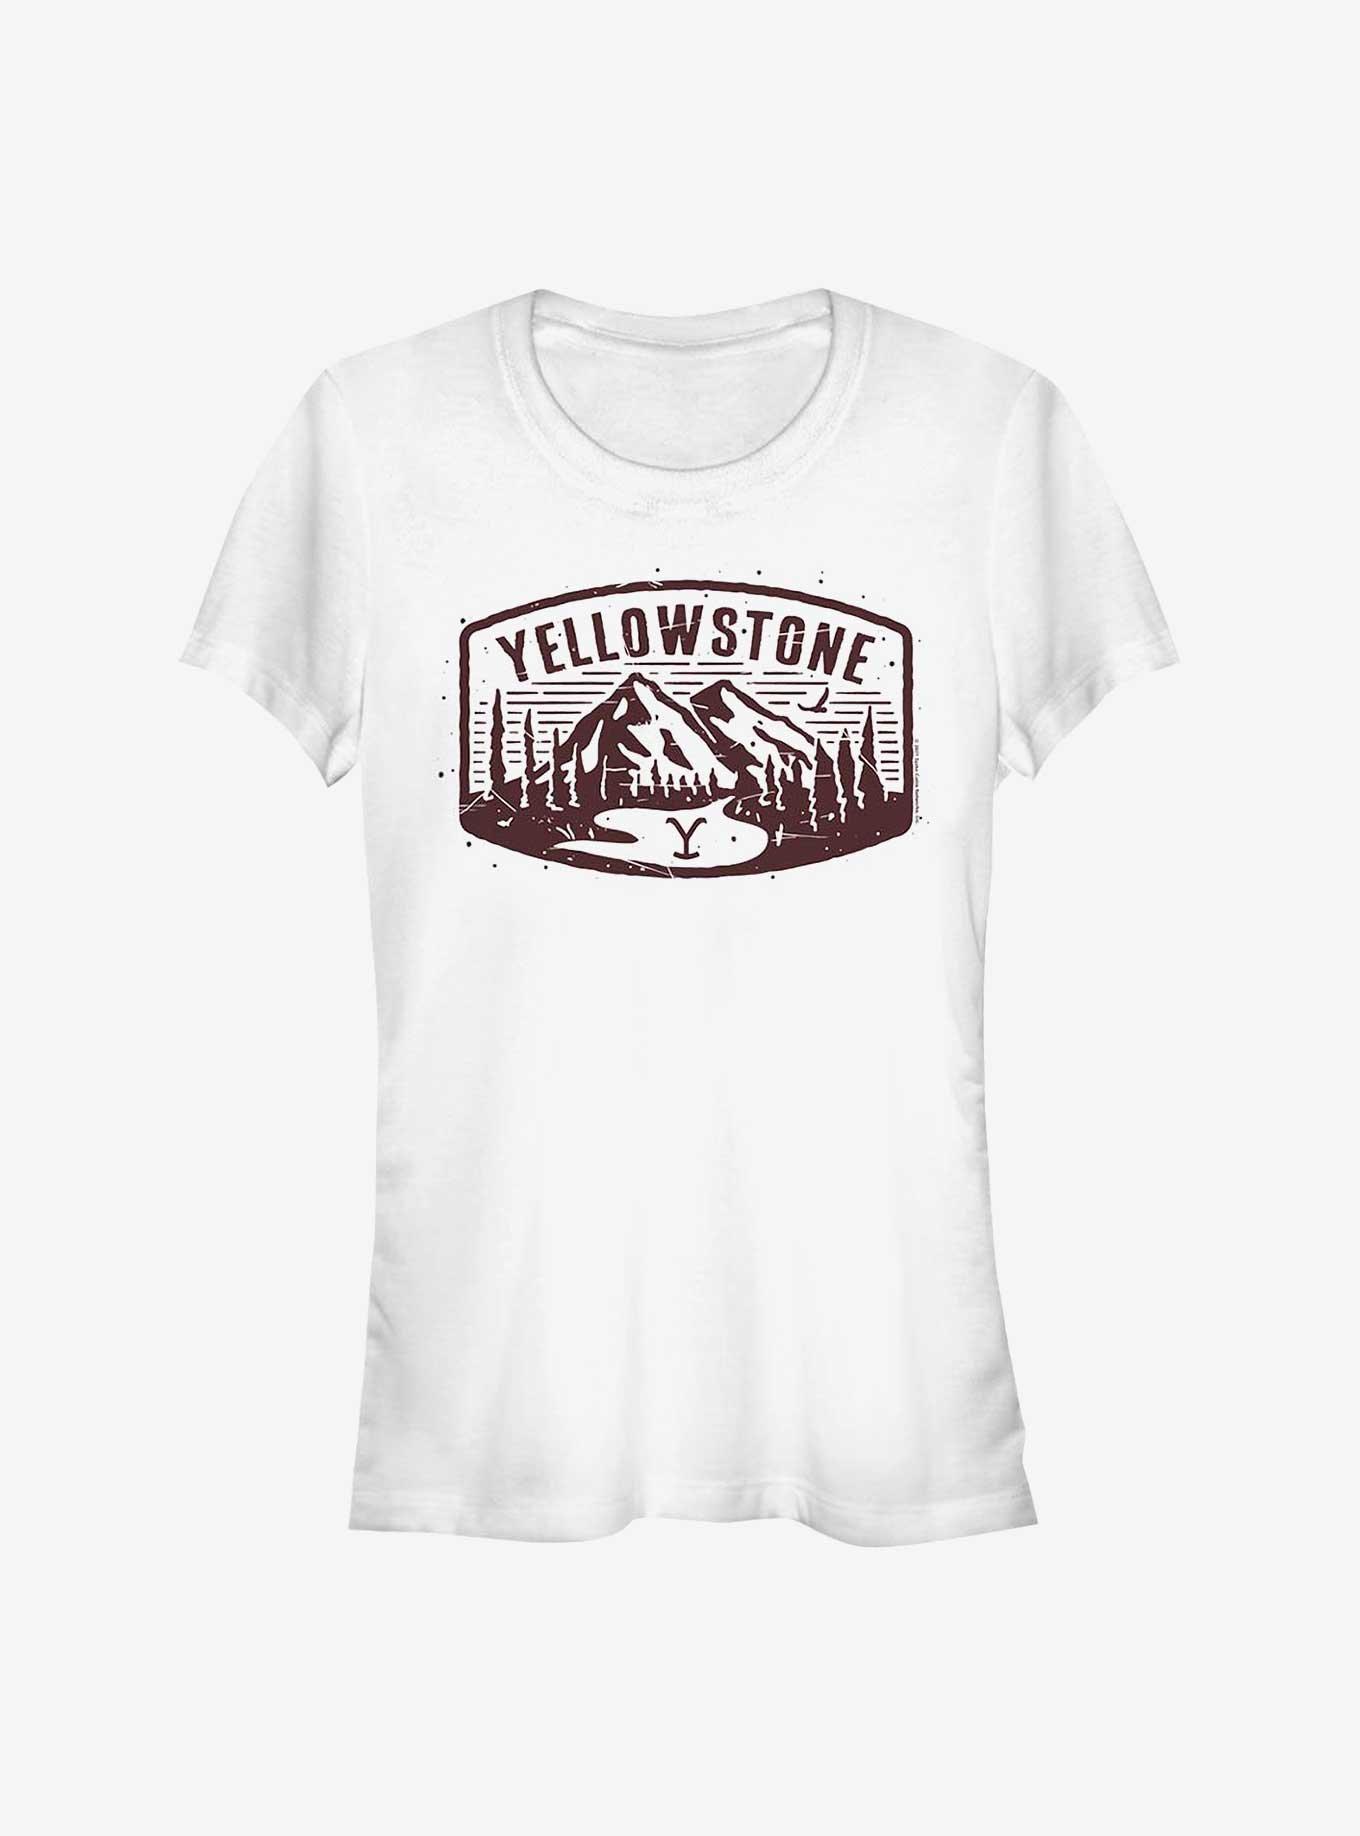 Yellowstone Mountains Girls T-Shirt